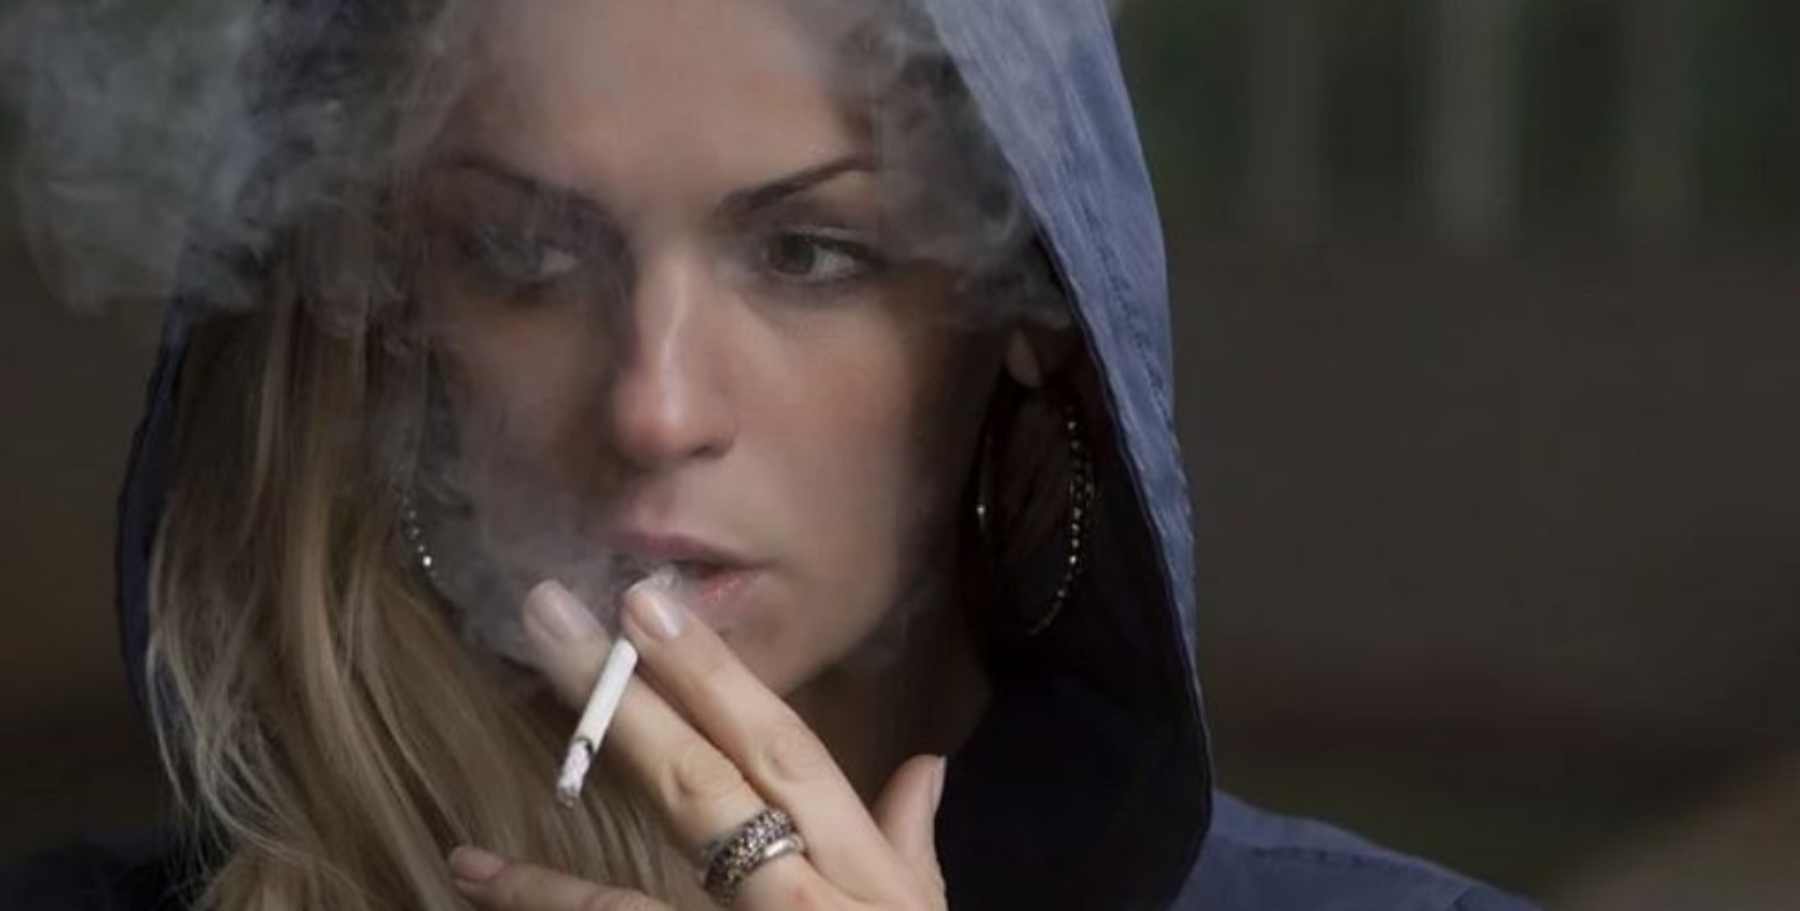 Las mujeres quieren abandonar el hábito del tabaco más que los hombres.